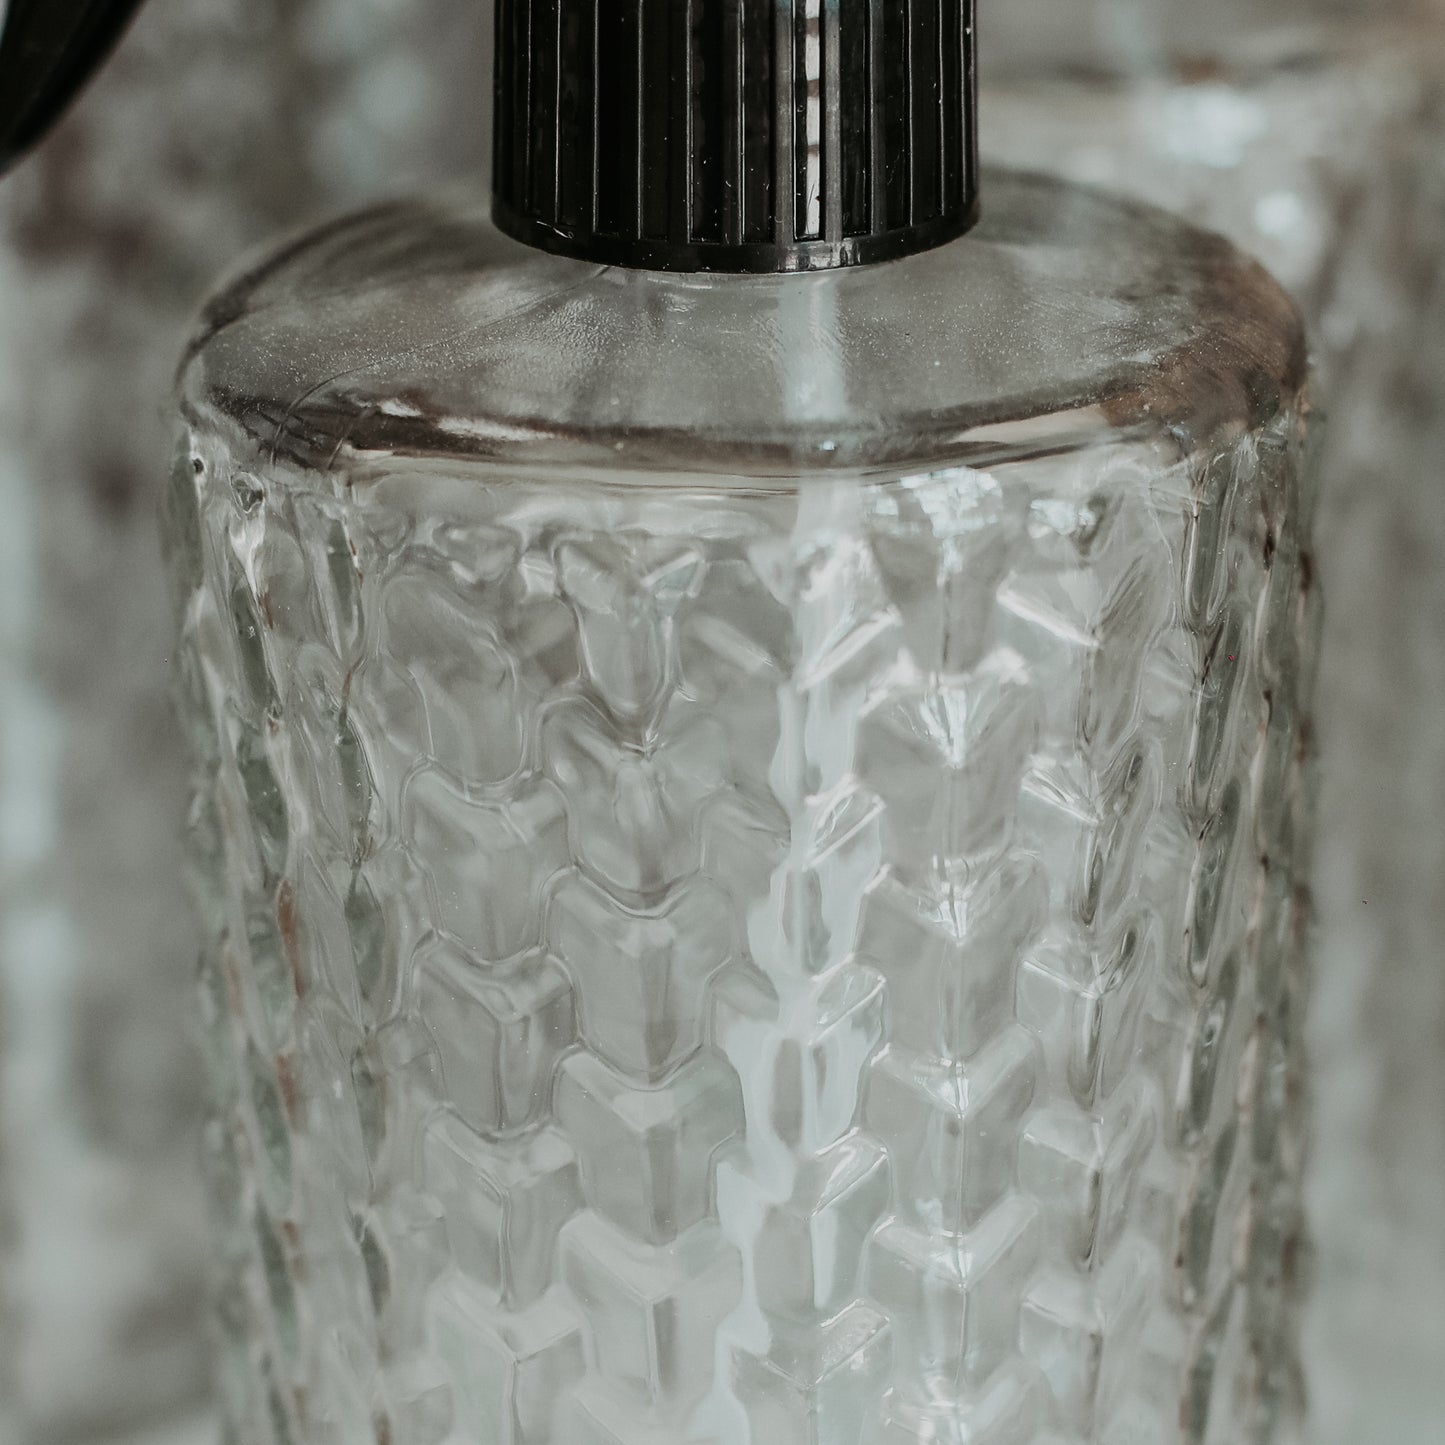 Embossed Glass Spray Bottle